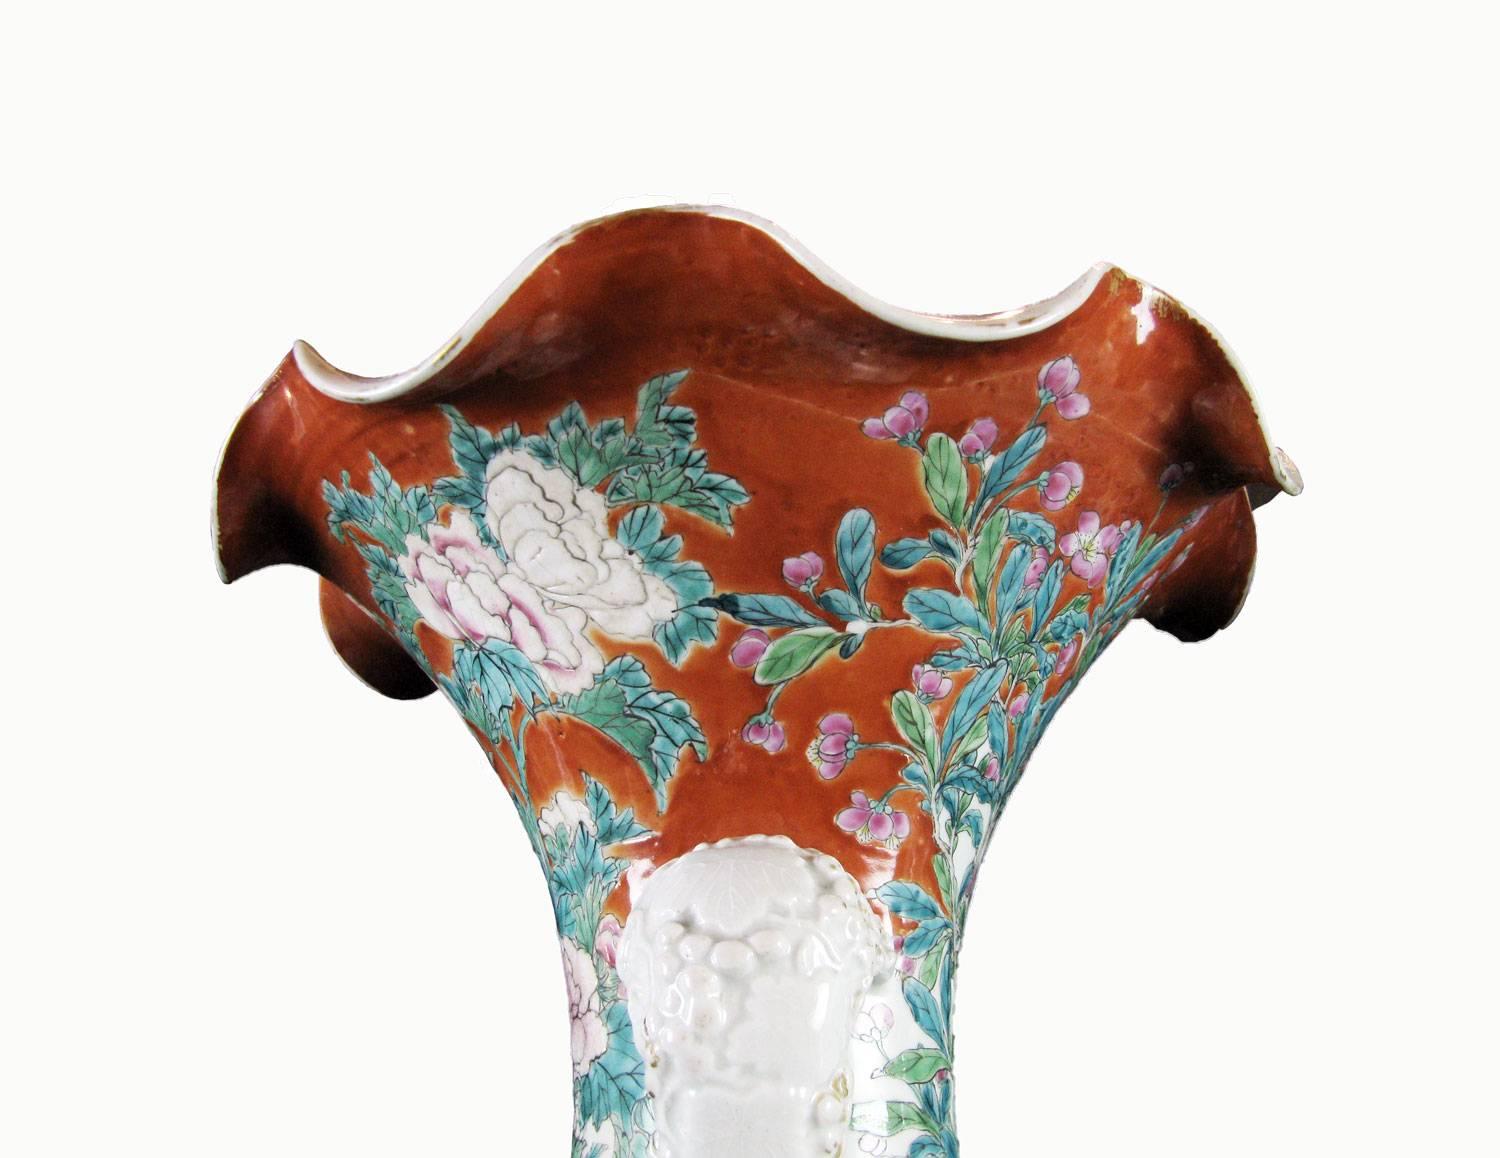 Pair of Large Japanese Porcelain Vases 19th Century Kutani Style 1